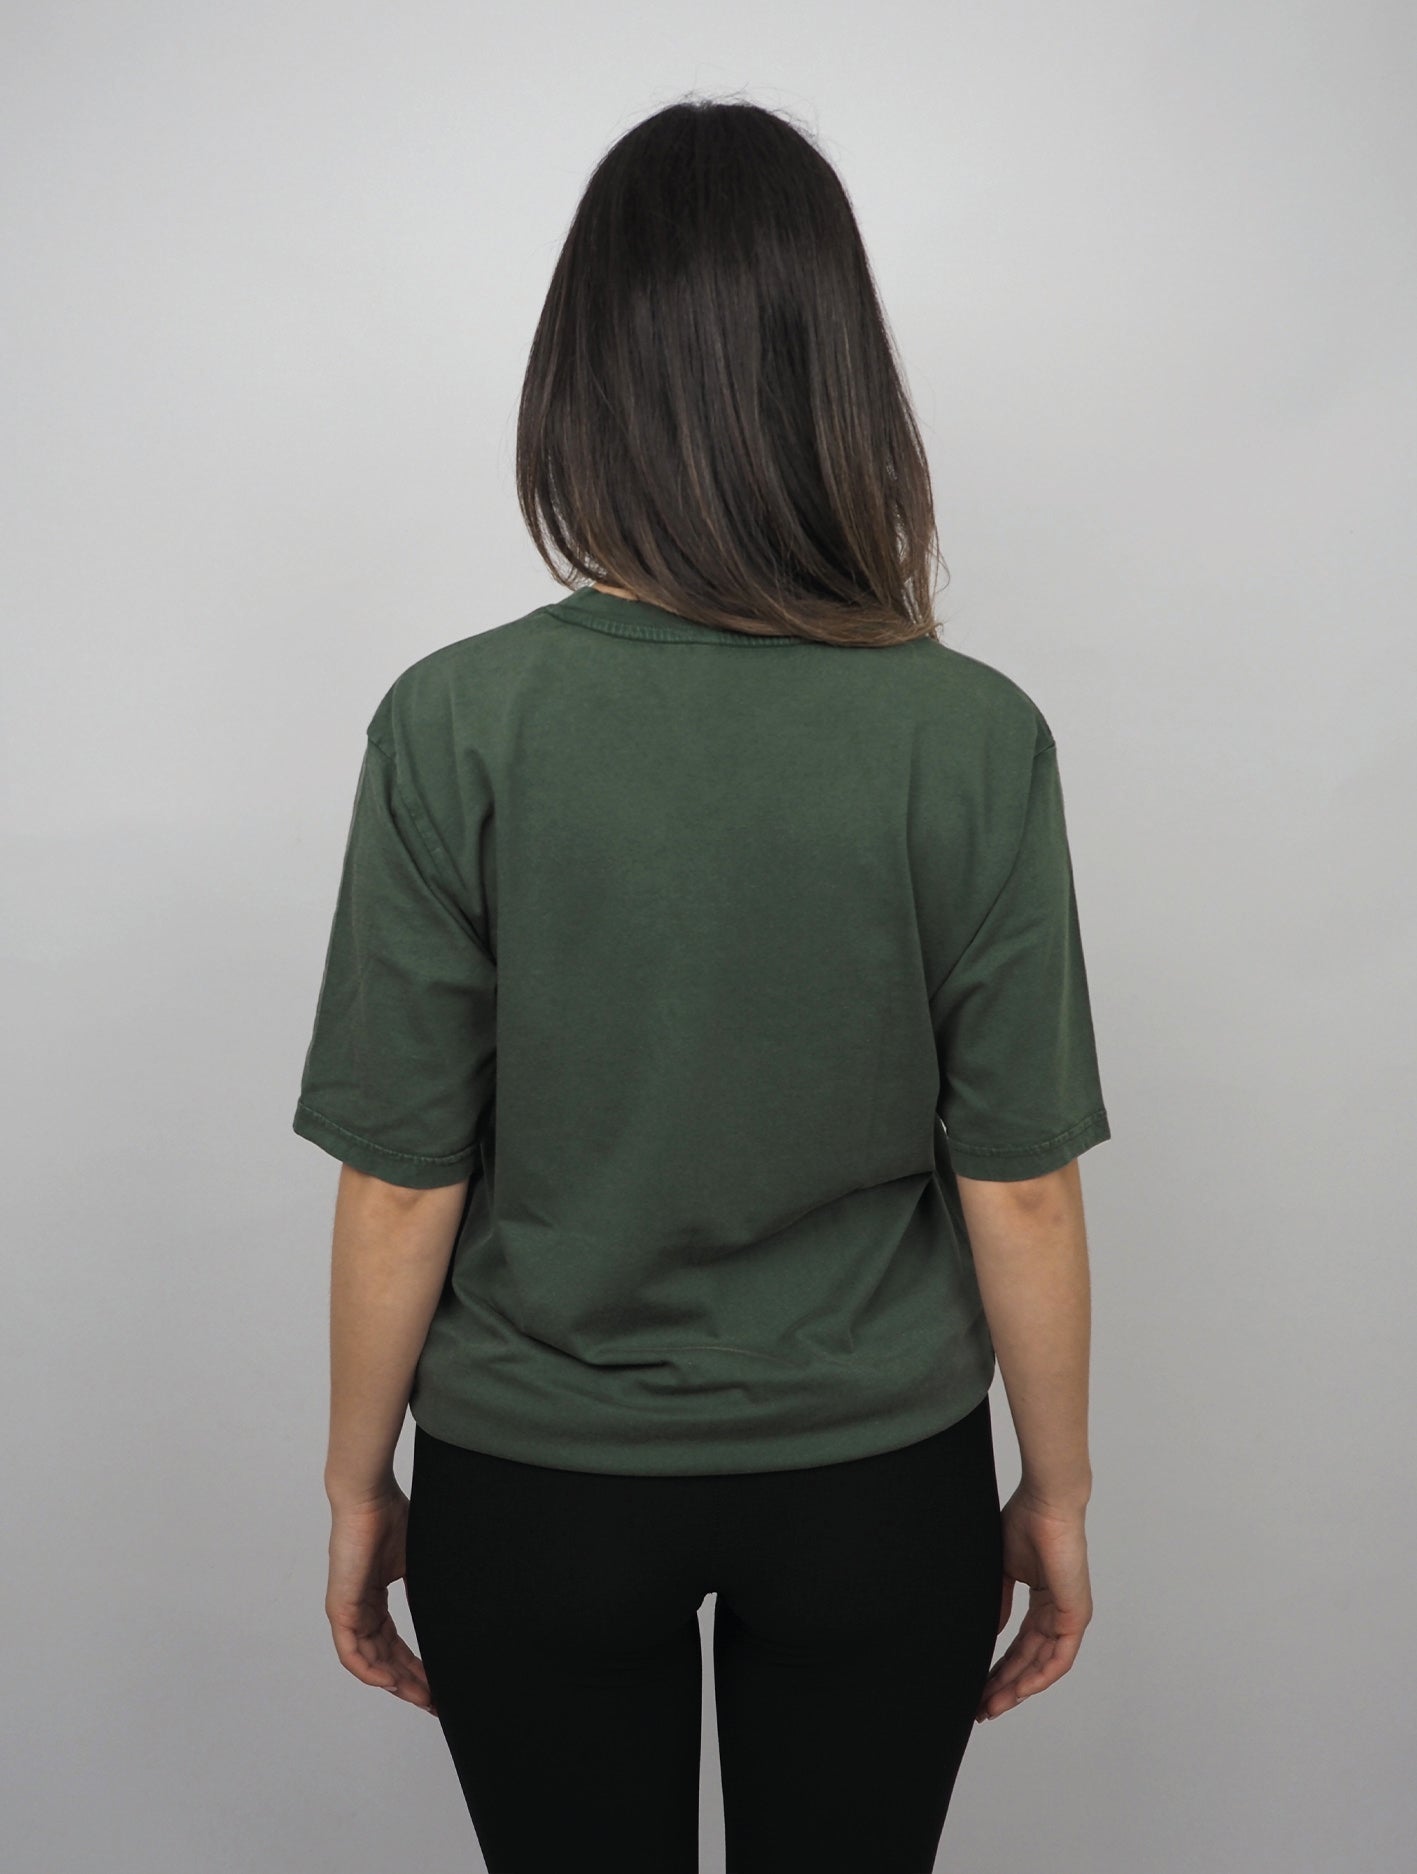 Green Blank (XL)